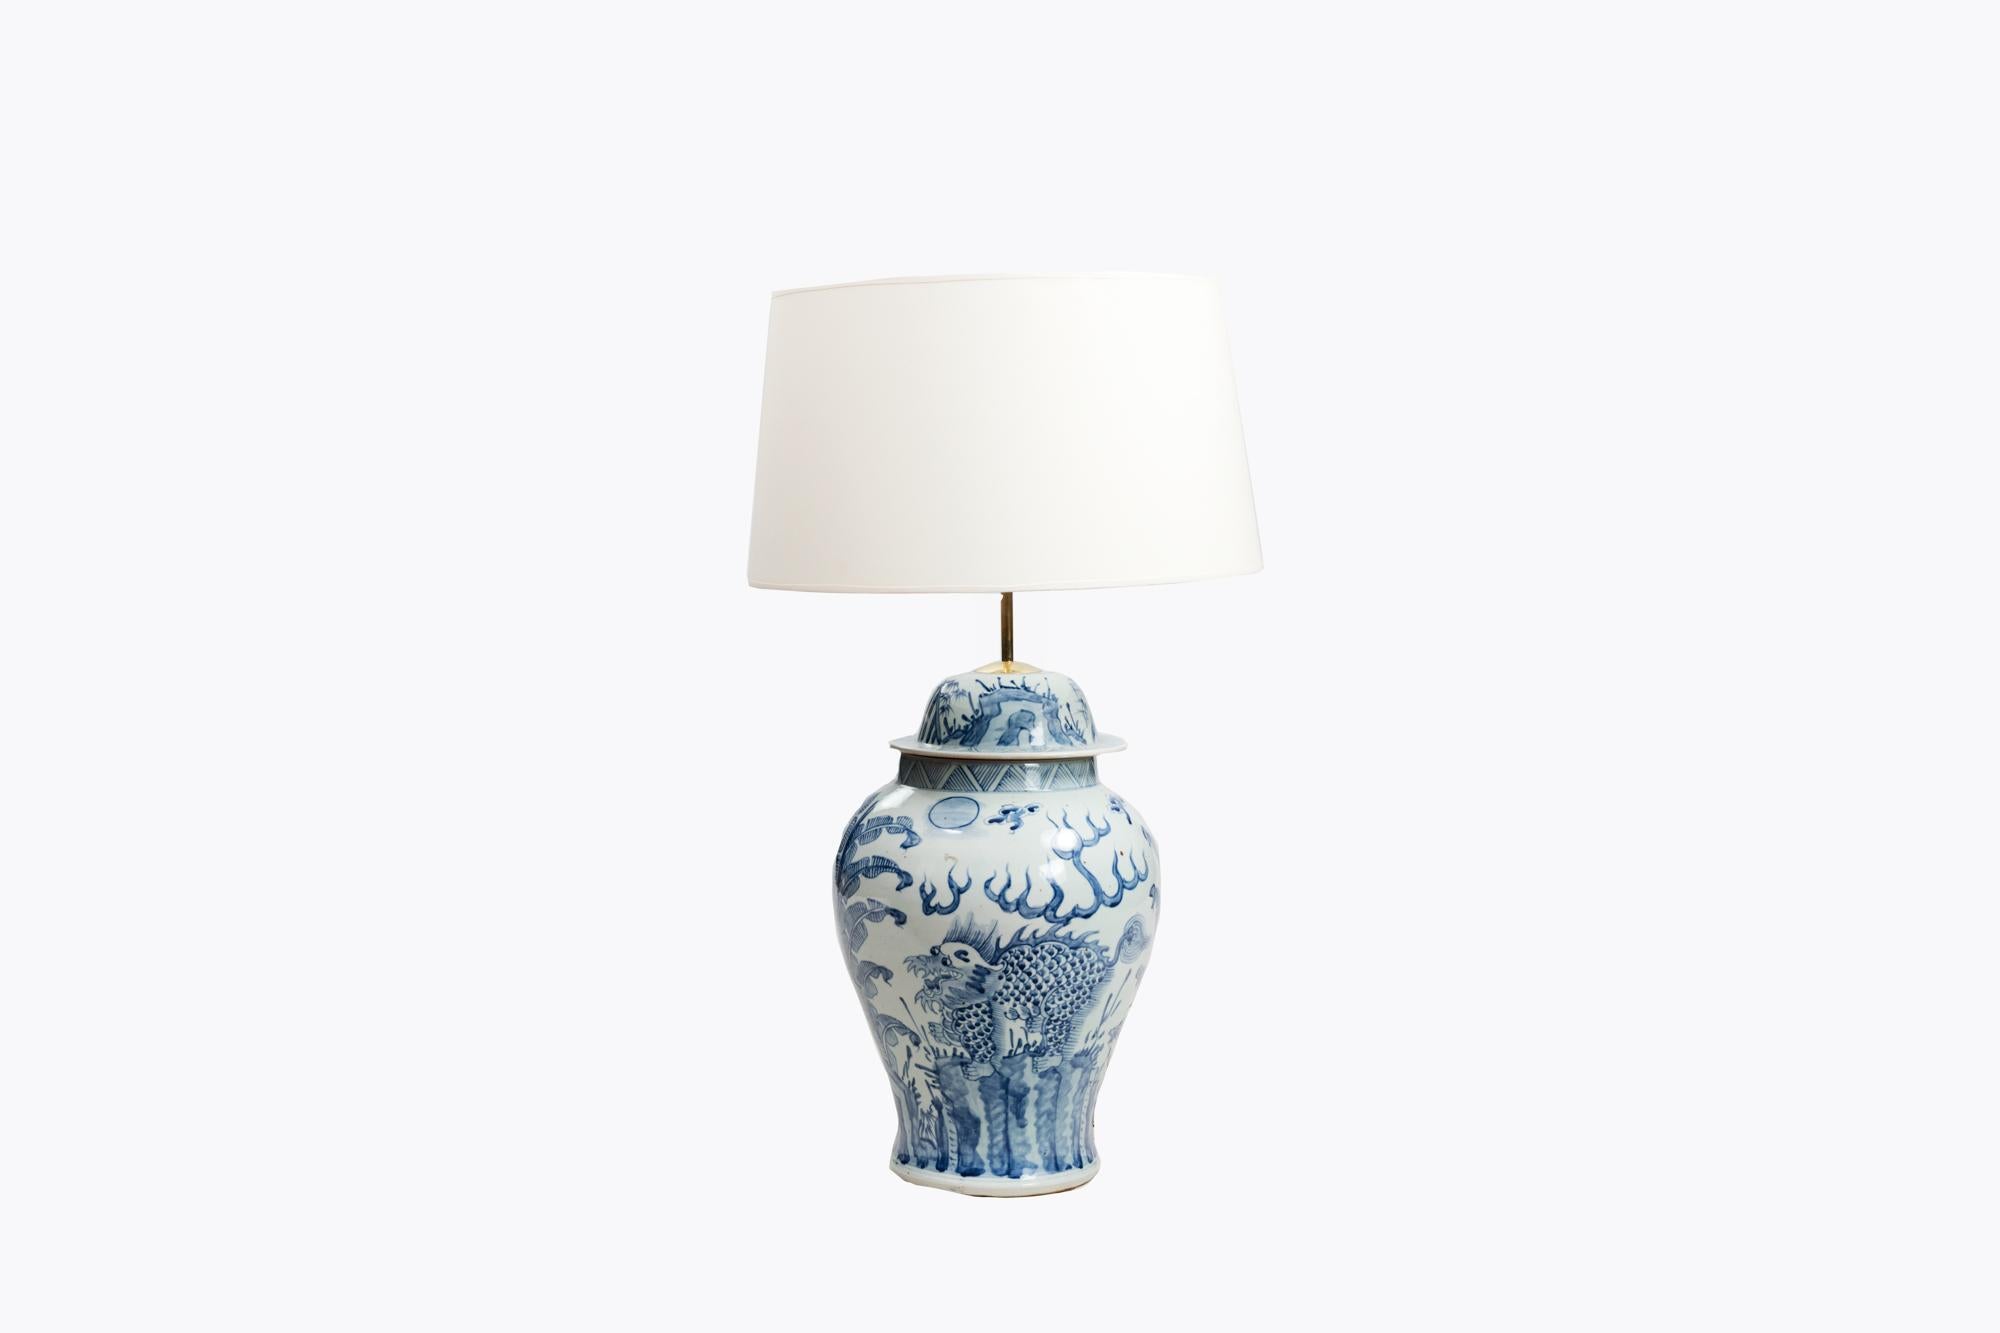 Pot à gingembre bleu et blanc du début du 20e siècle transformé en lampe dans le style de la période chinoise du 18e siècle. Il est orné d'un paysage floral de feuilles et de motifs géométriques.